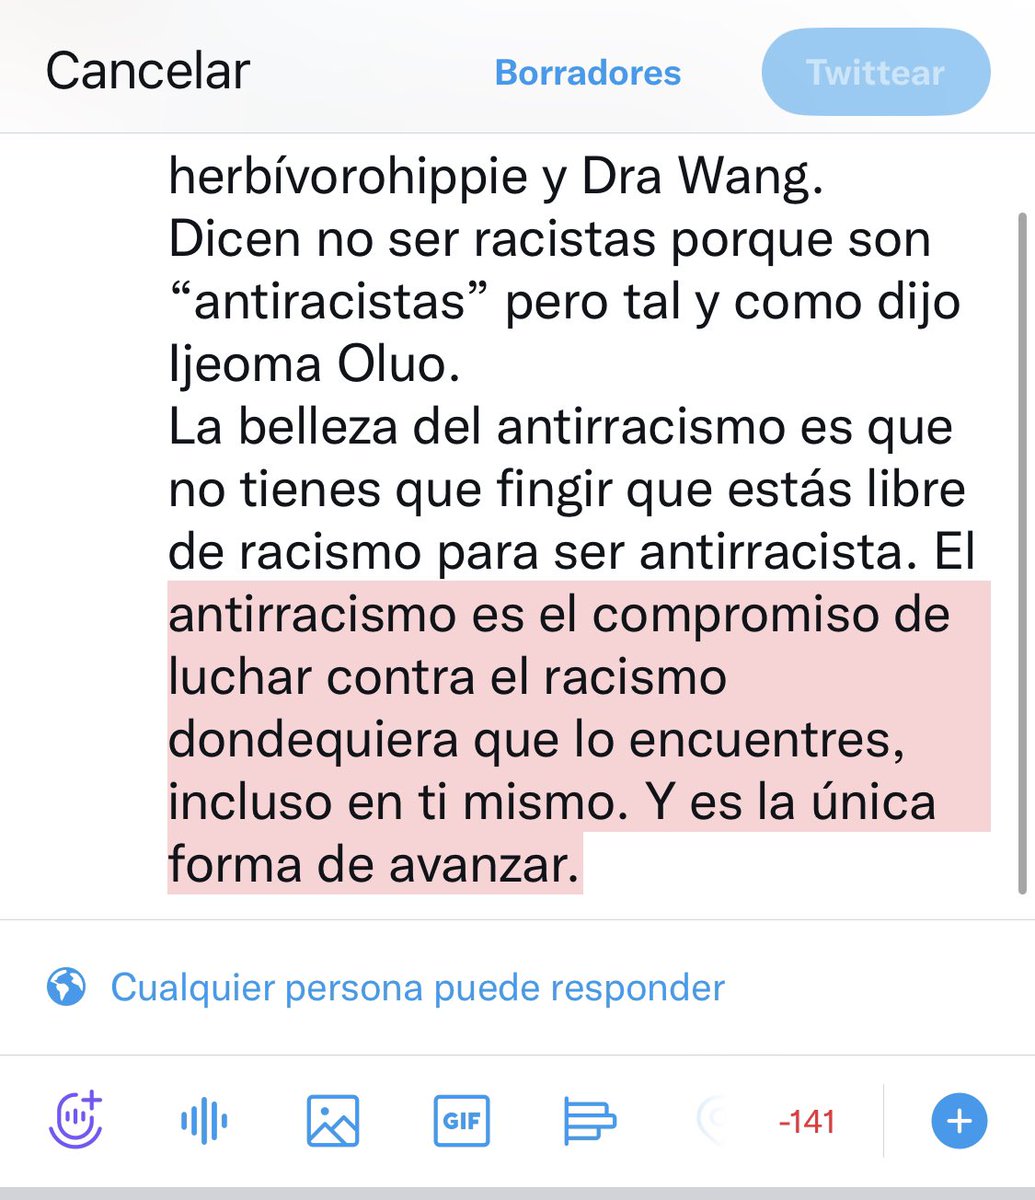 este es el último tweet que voy a dedicar sobre el tema de herbívorohippie y Dra Wang.
Dicen no ser racistas porque son “antiracistas” pero tal y como dijo 
Ijeoma Oluo. 
Y aunque les señalemos sus violencias como personas blancas deberían de escucharnos pero no.